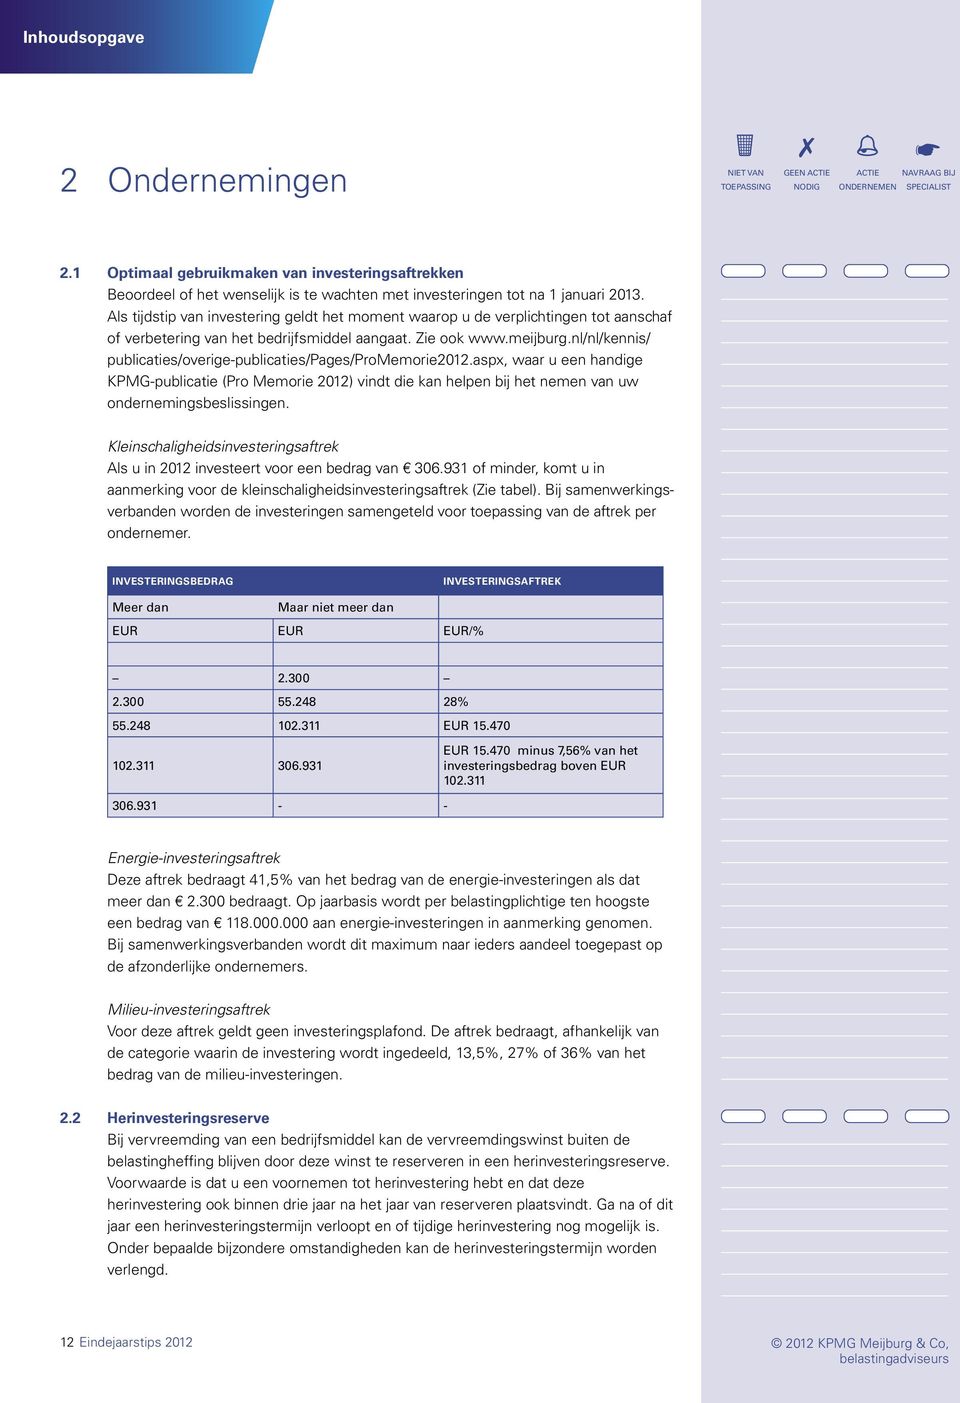 nl/nl/kennis/ publicaties/overige-publicaties/pages/promemorie2012.aspx, waar u een handige KPMG-publicatie (Pro Memorie 2012) vindt die kan helpen bij het nemen van uw ondernemingsbeslissingen.